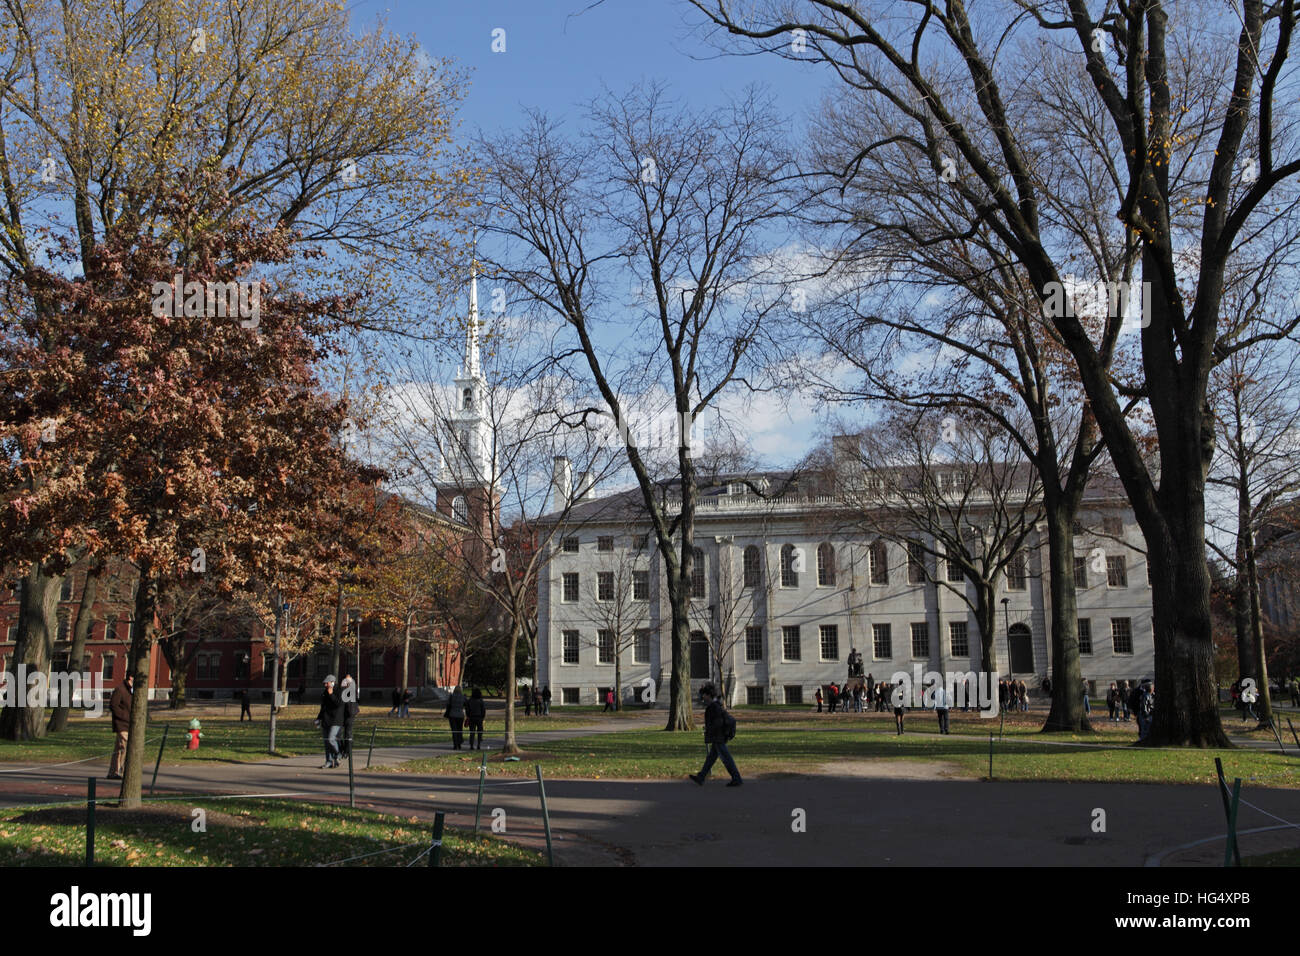 Harvard University campus on an autumn morning. Stock Photo